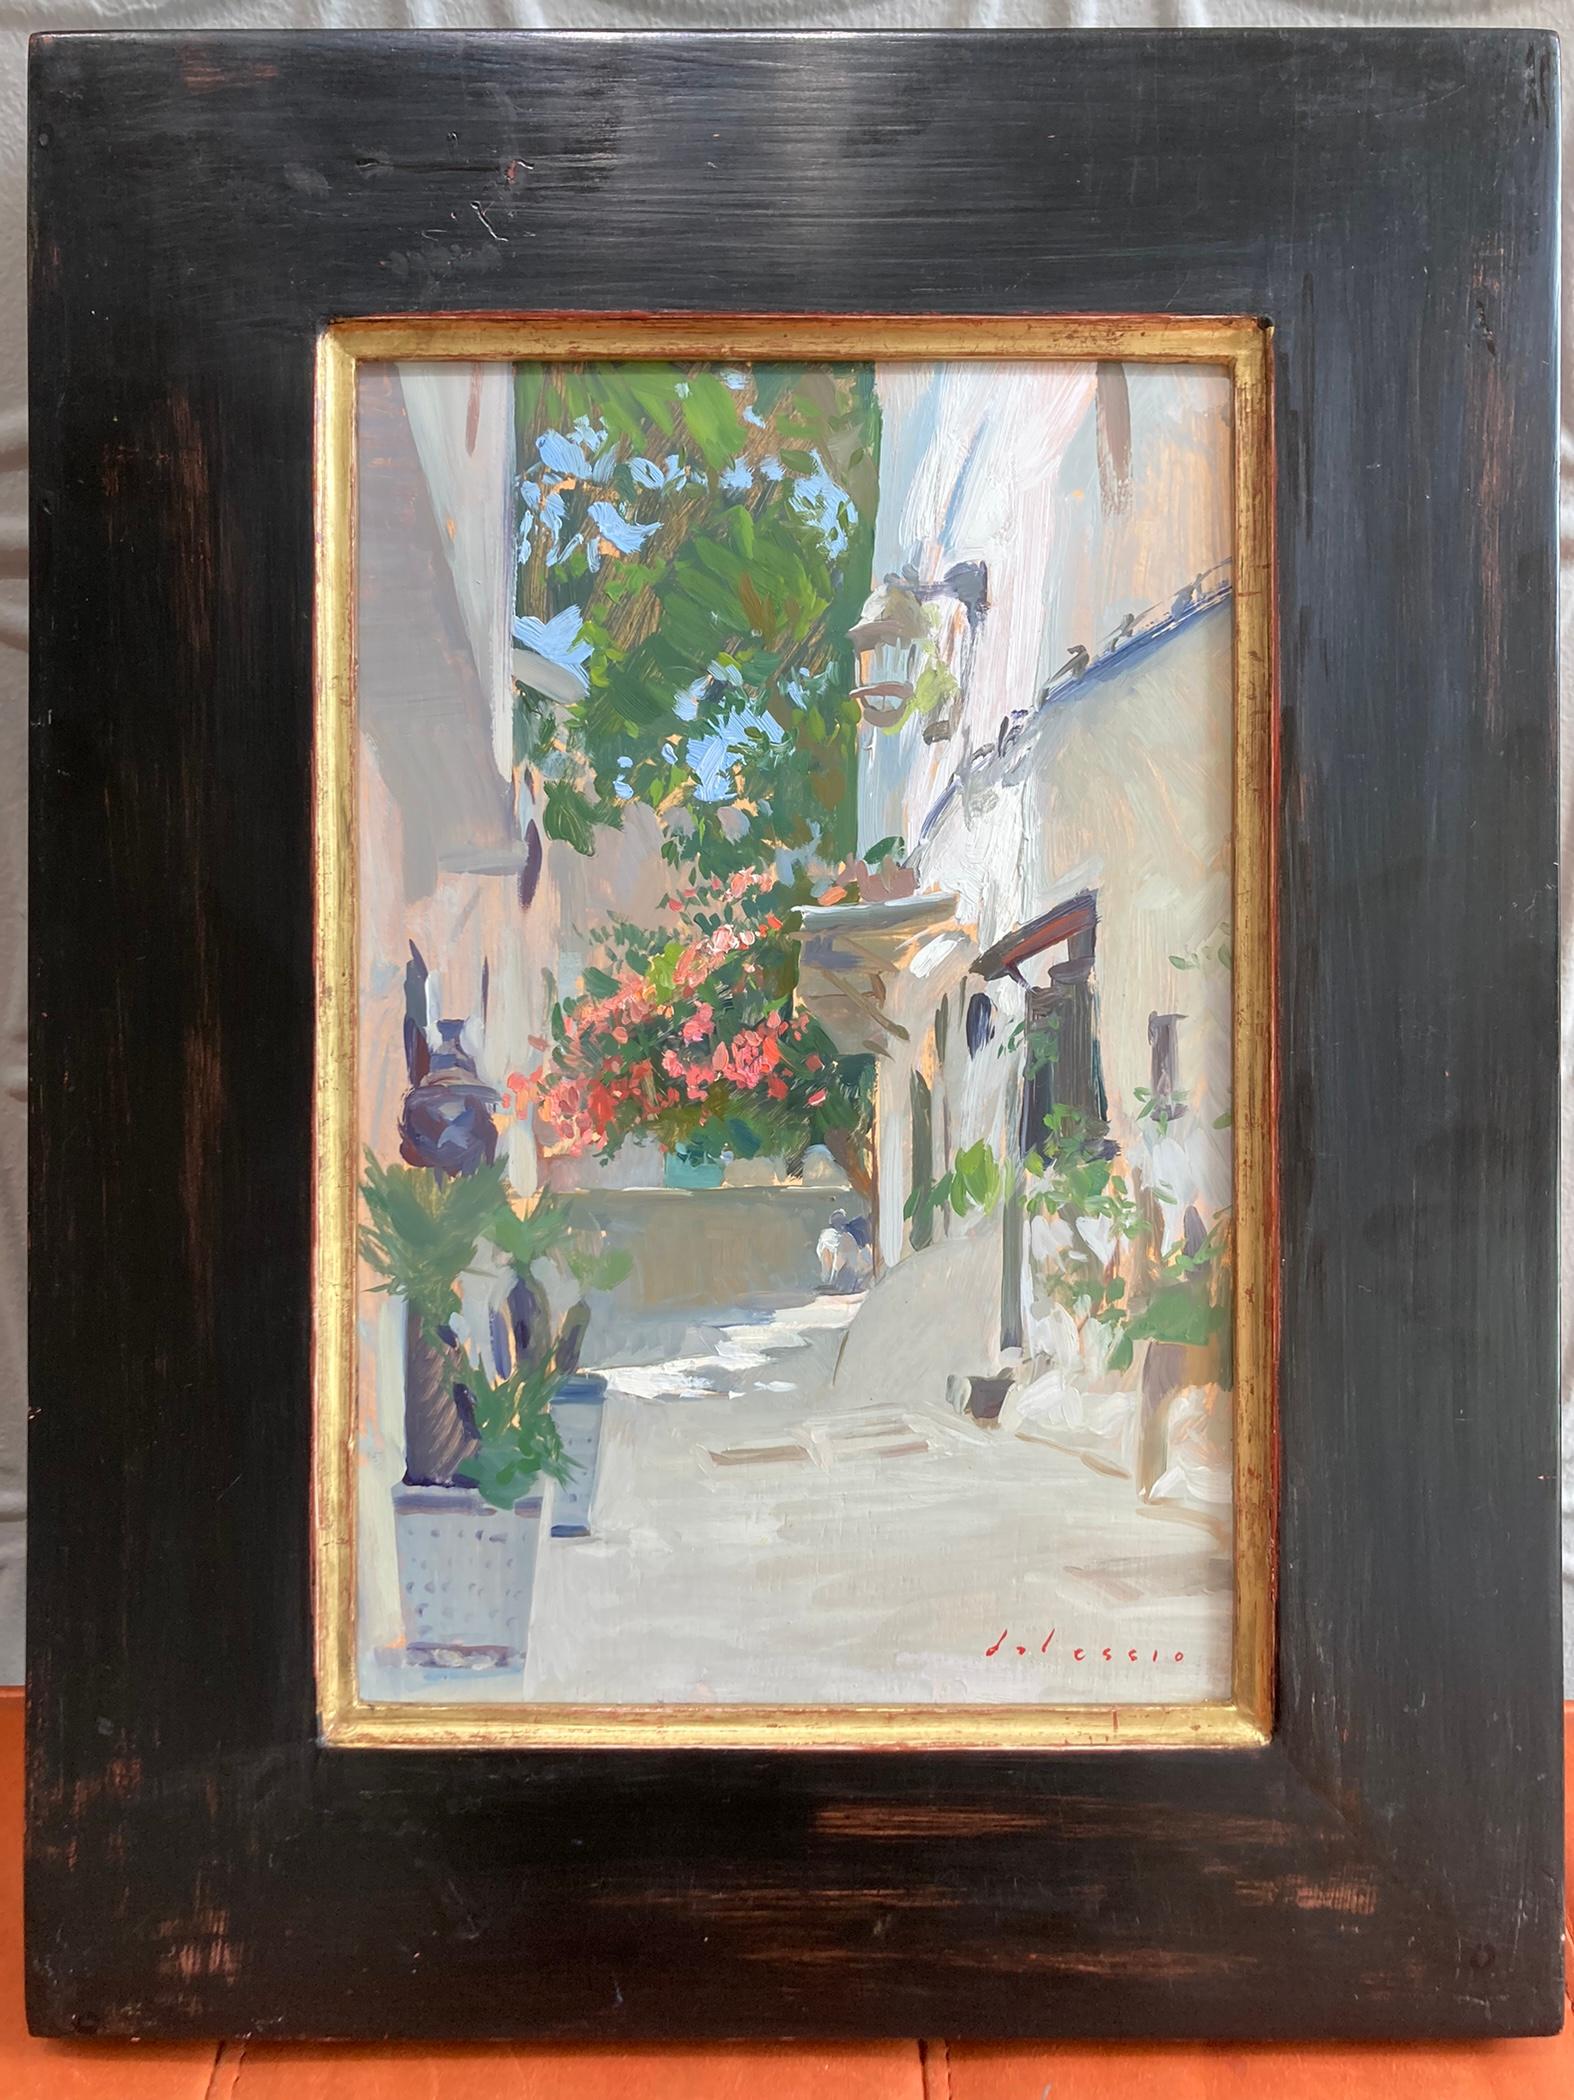 « Tangiers », scène lumineuse d'une rue calme et colorée peinte en plein air  - Painting de Marc Dalessio